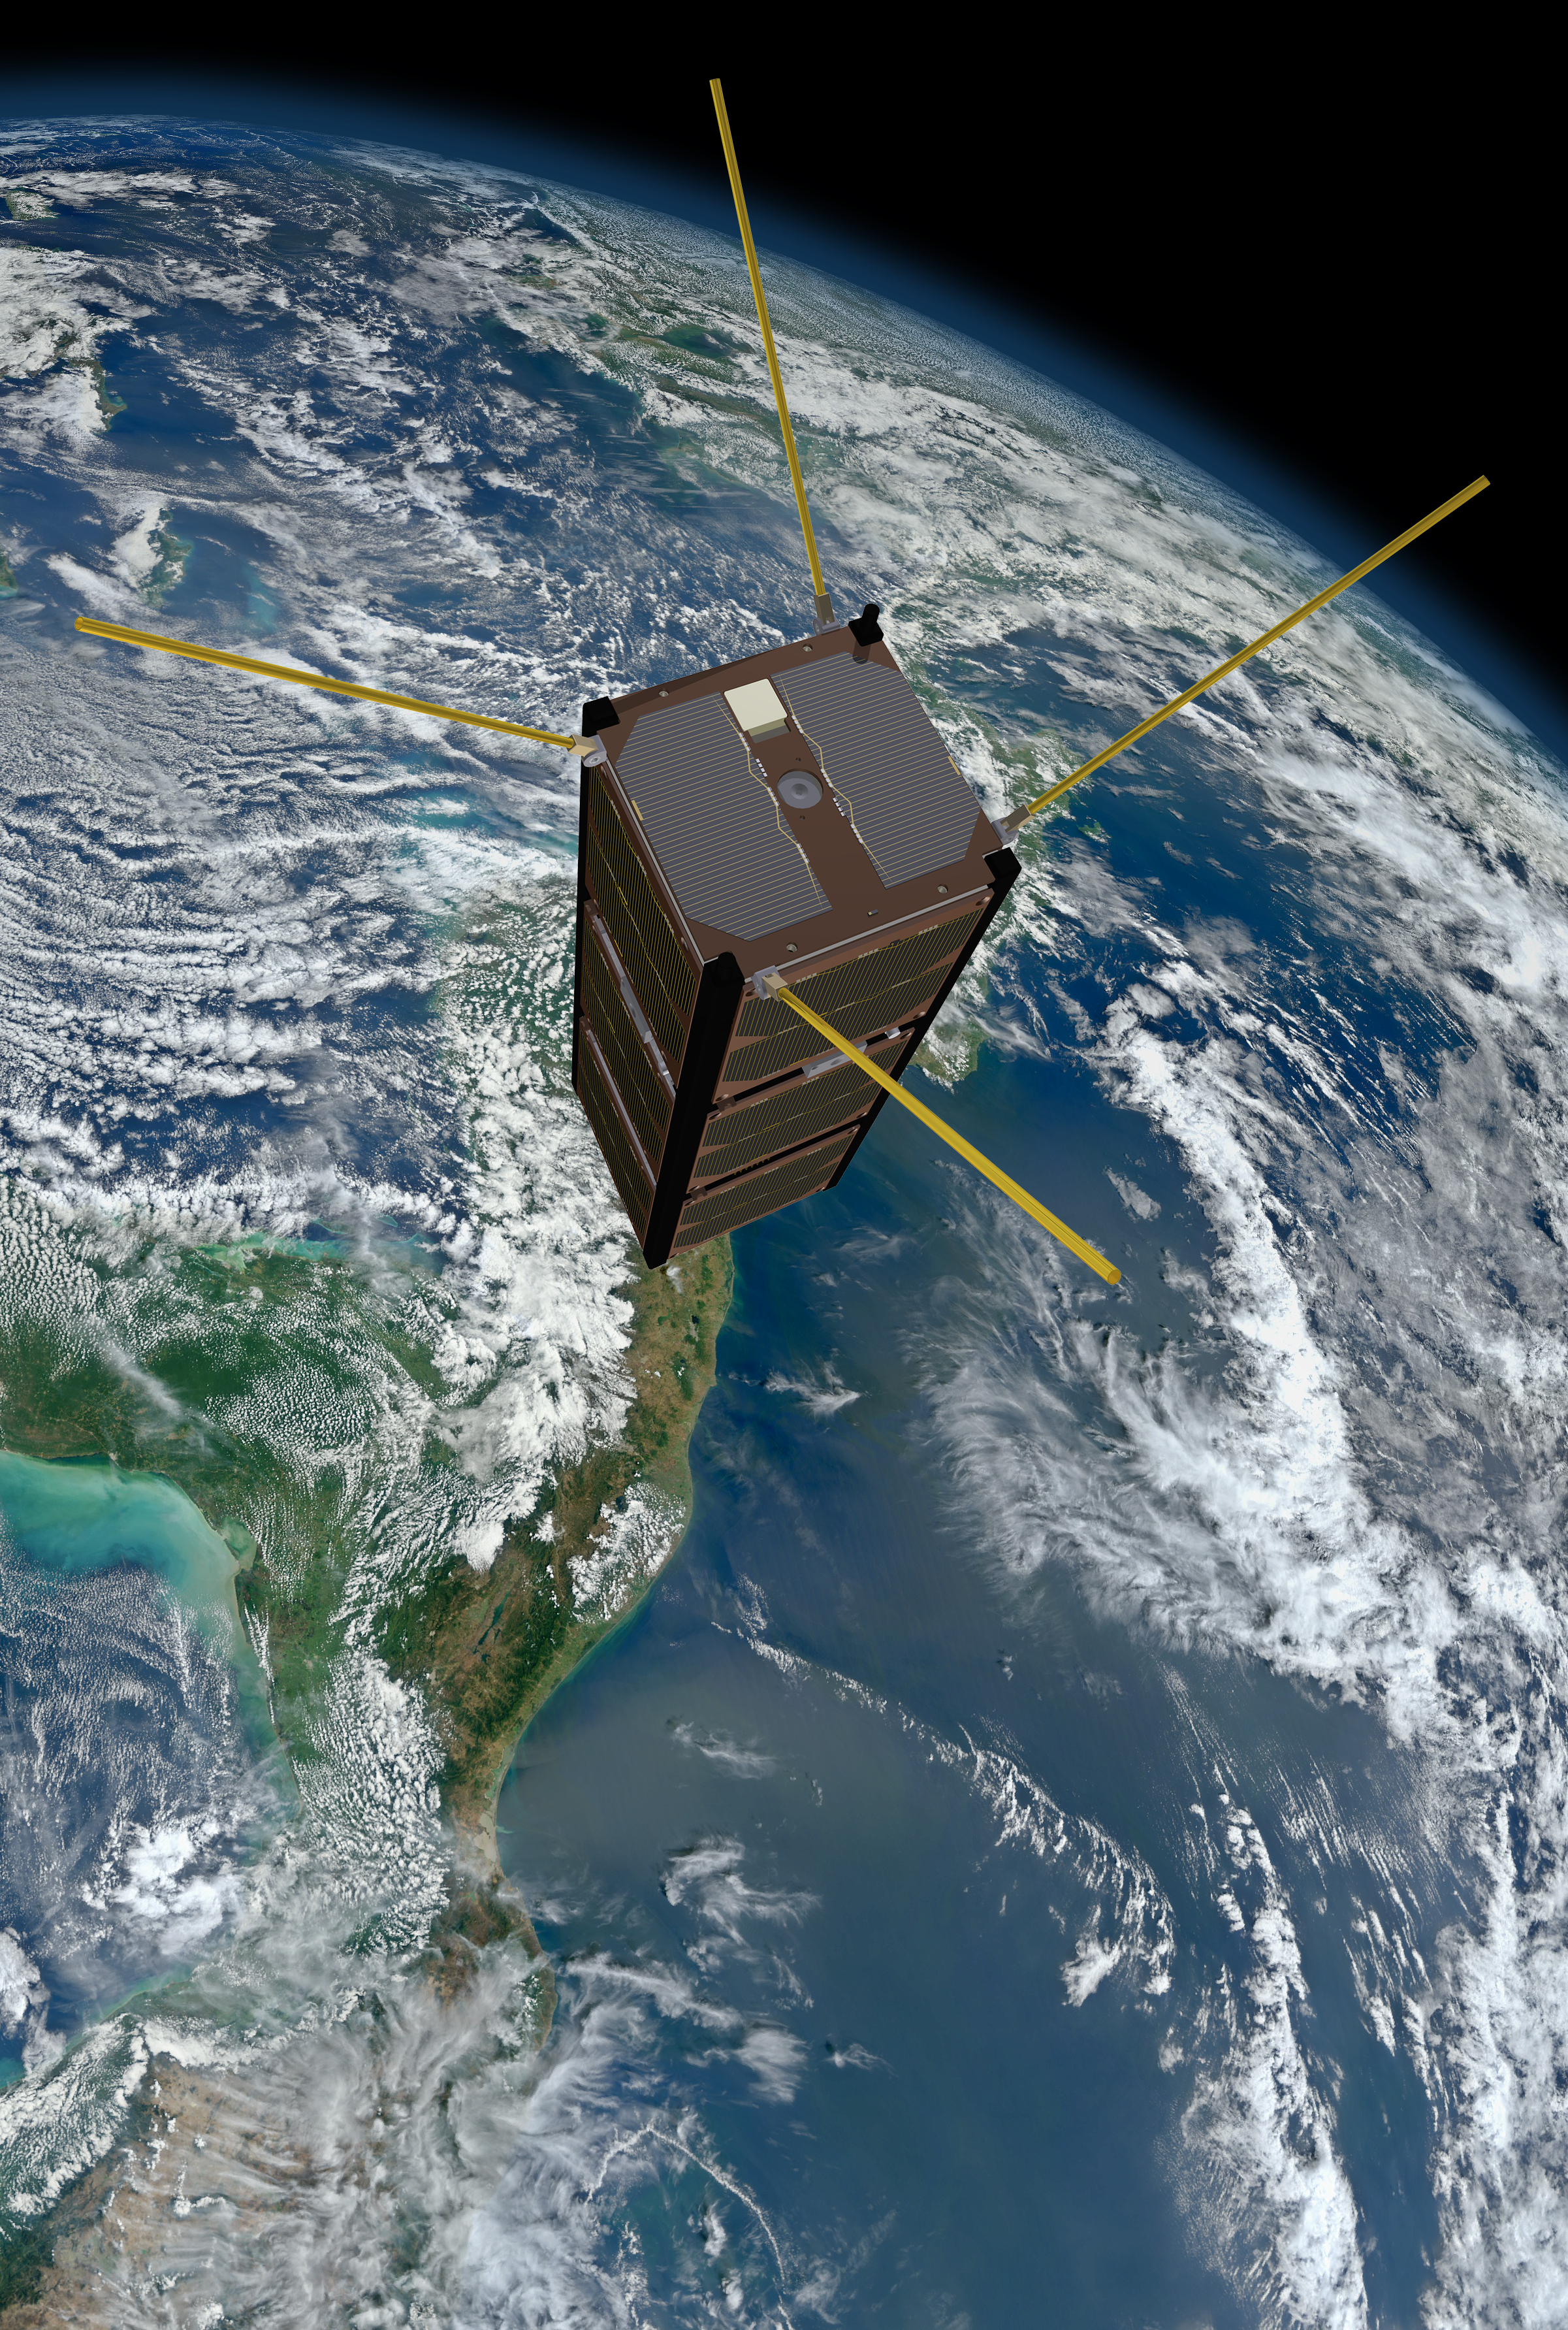 El FACSAT-1, activo espacial de su Fuerza Aérea Colombiana, cumple 4 años en órbita